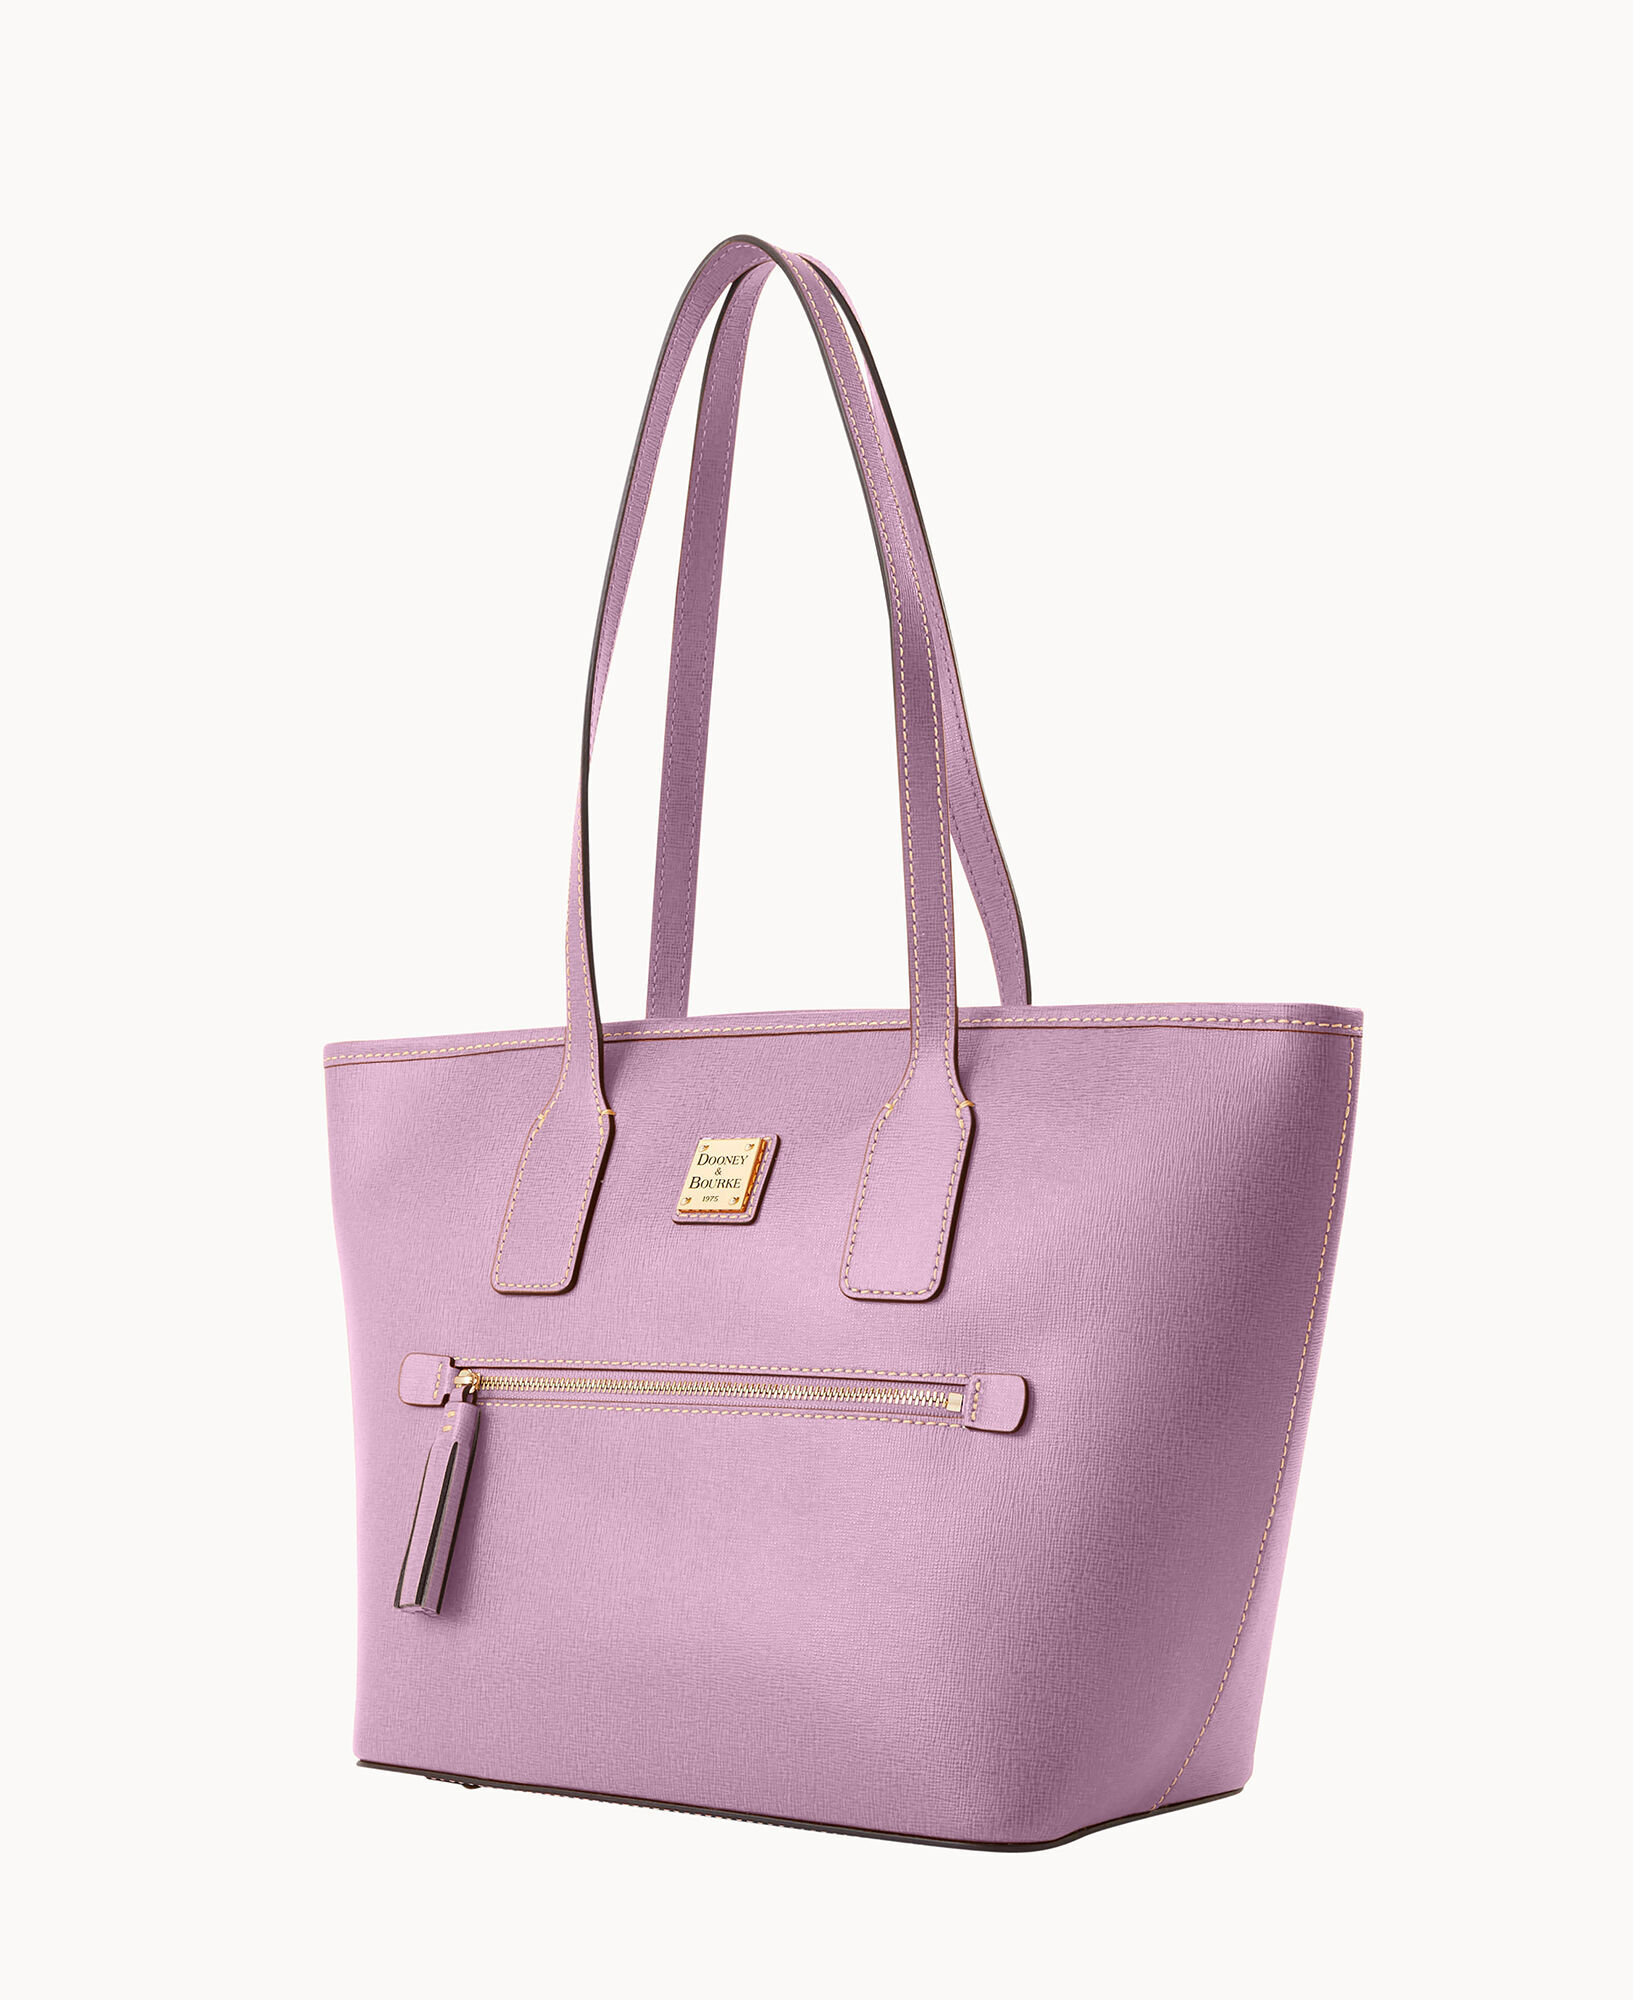 Dooney & Bourke Saffiano Shopper Handbags Sky Blue : One Size